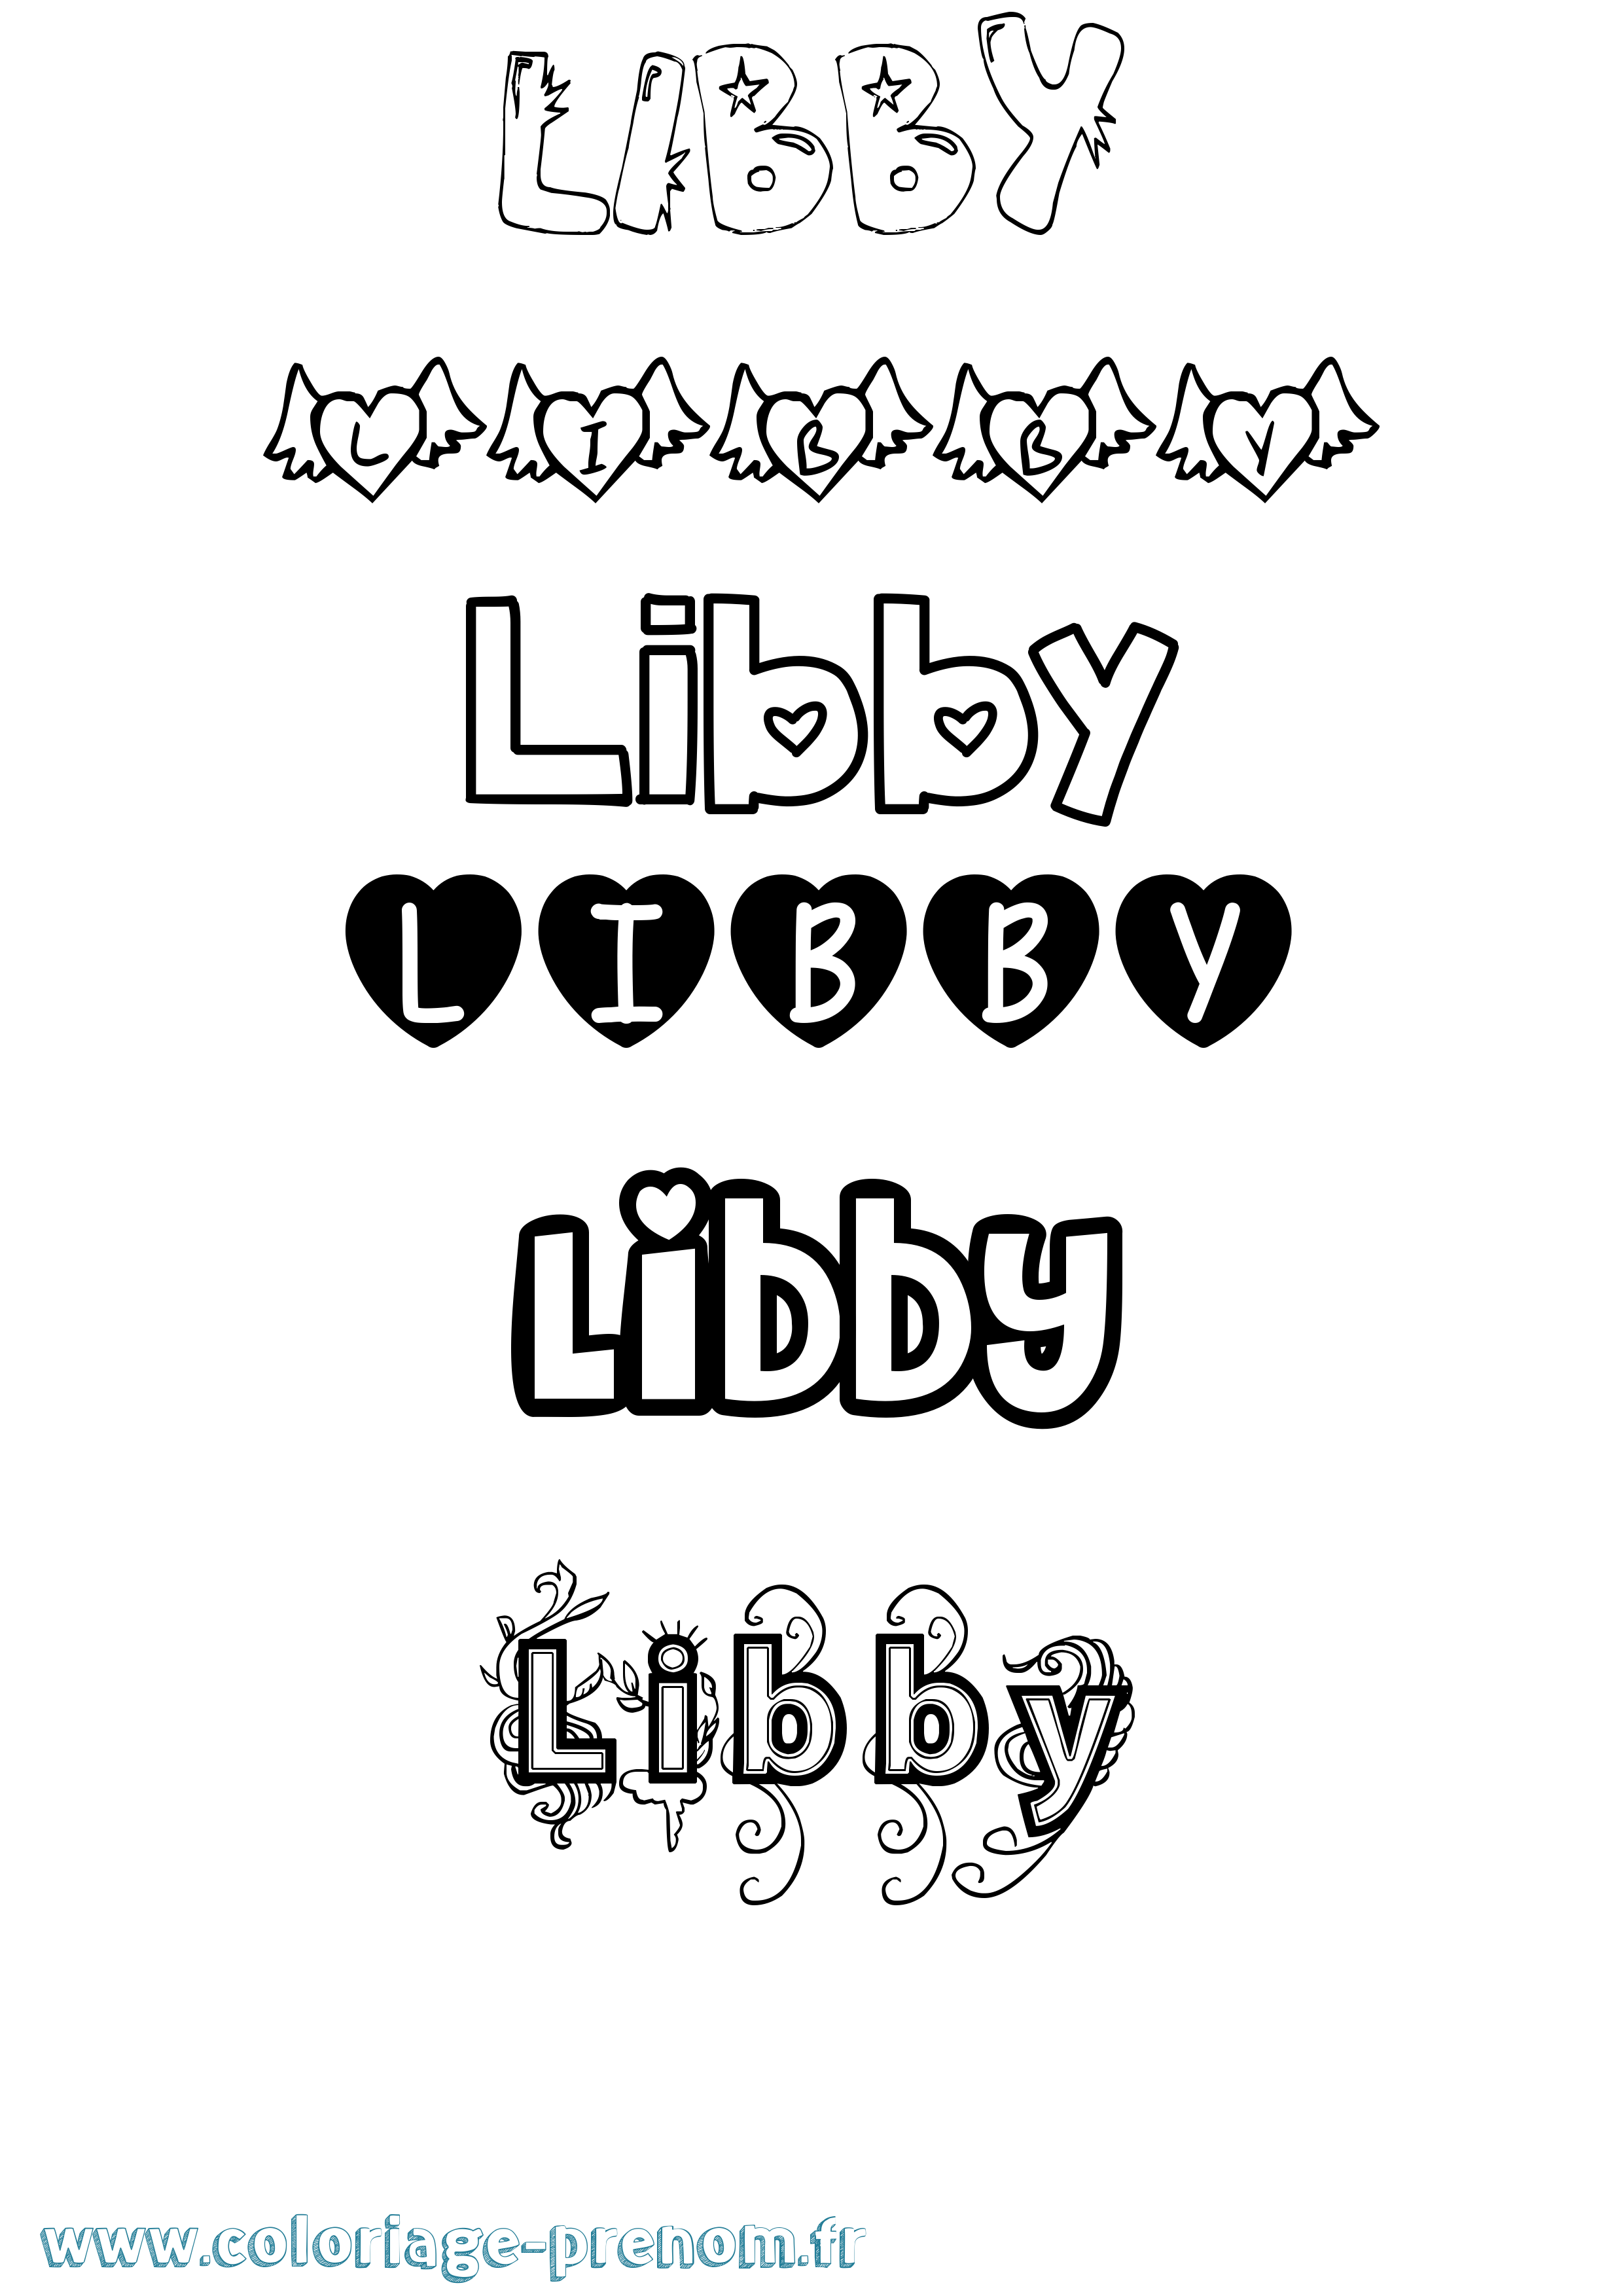 Coloriage prénom Libby Girly